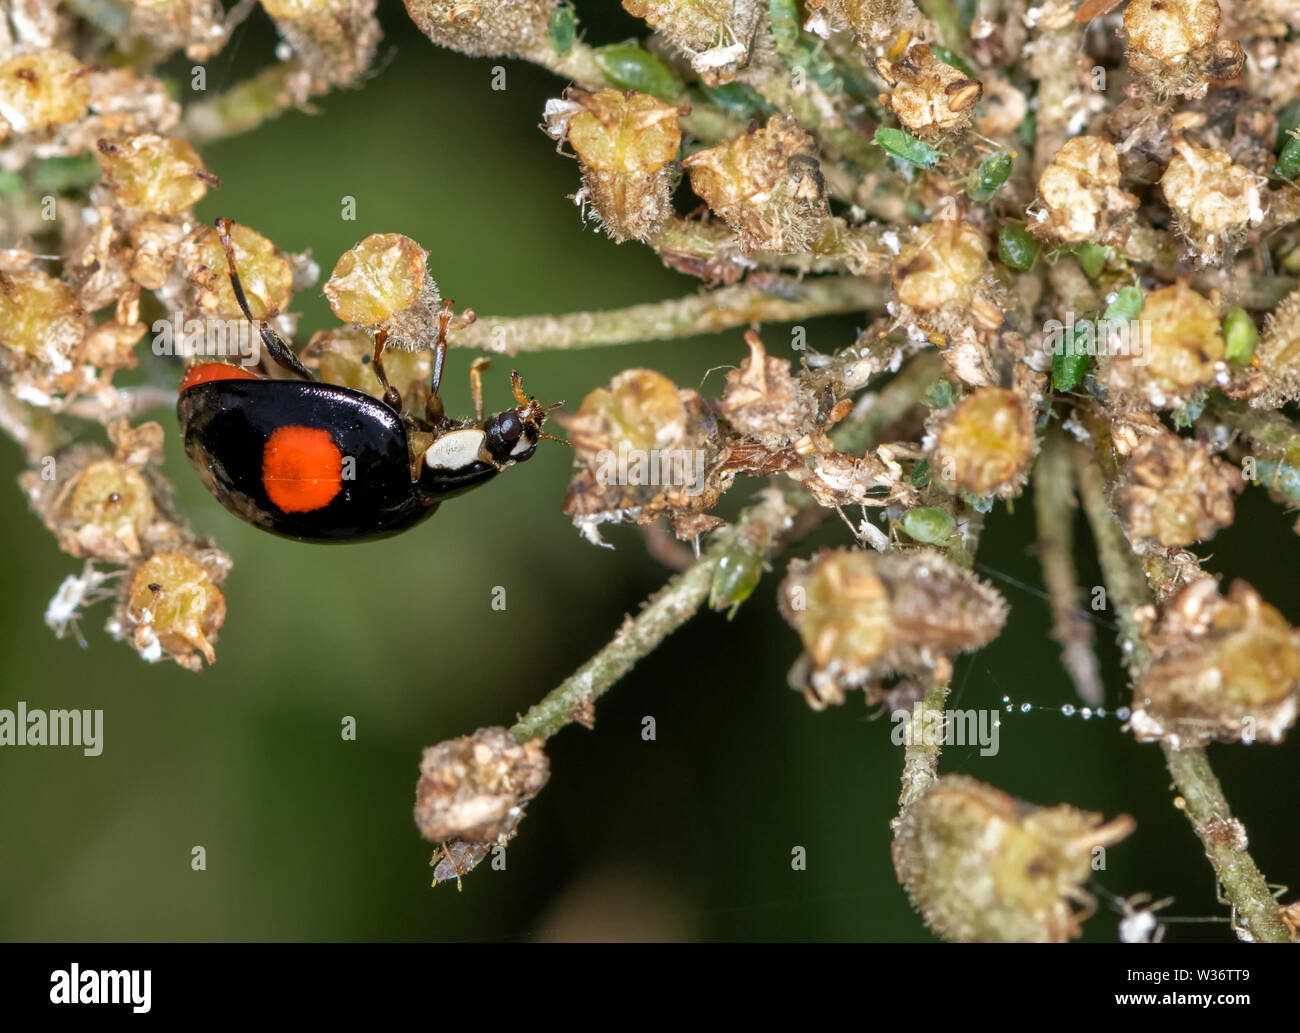 Harlekin Marienkäfer (Harmonia axyridis), auch bekannt als die Asien Marienkäfer, auf der Blume Leiter der Queen Anne's Lace, diesem Marienkäfer ist eine invasive Arten Stockfoto